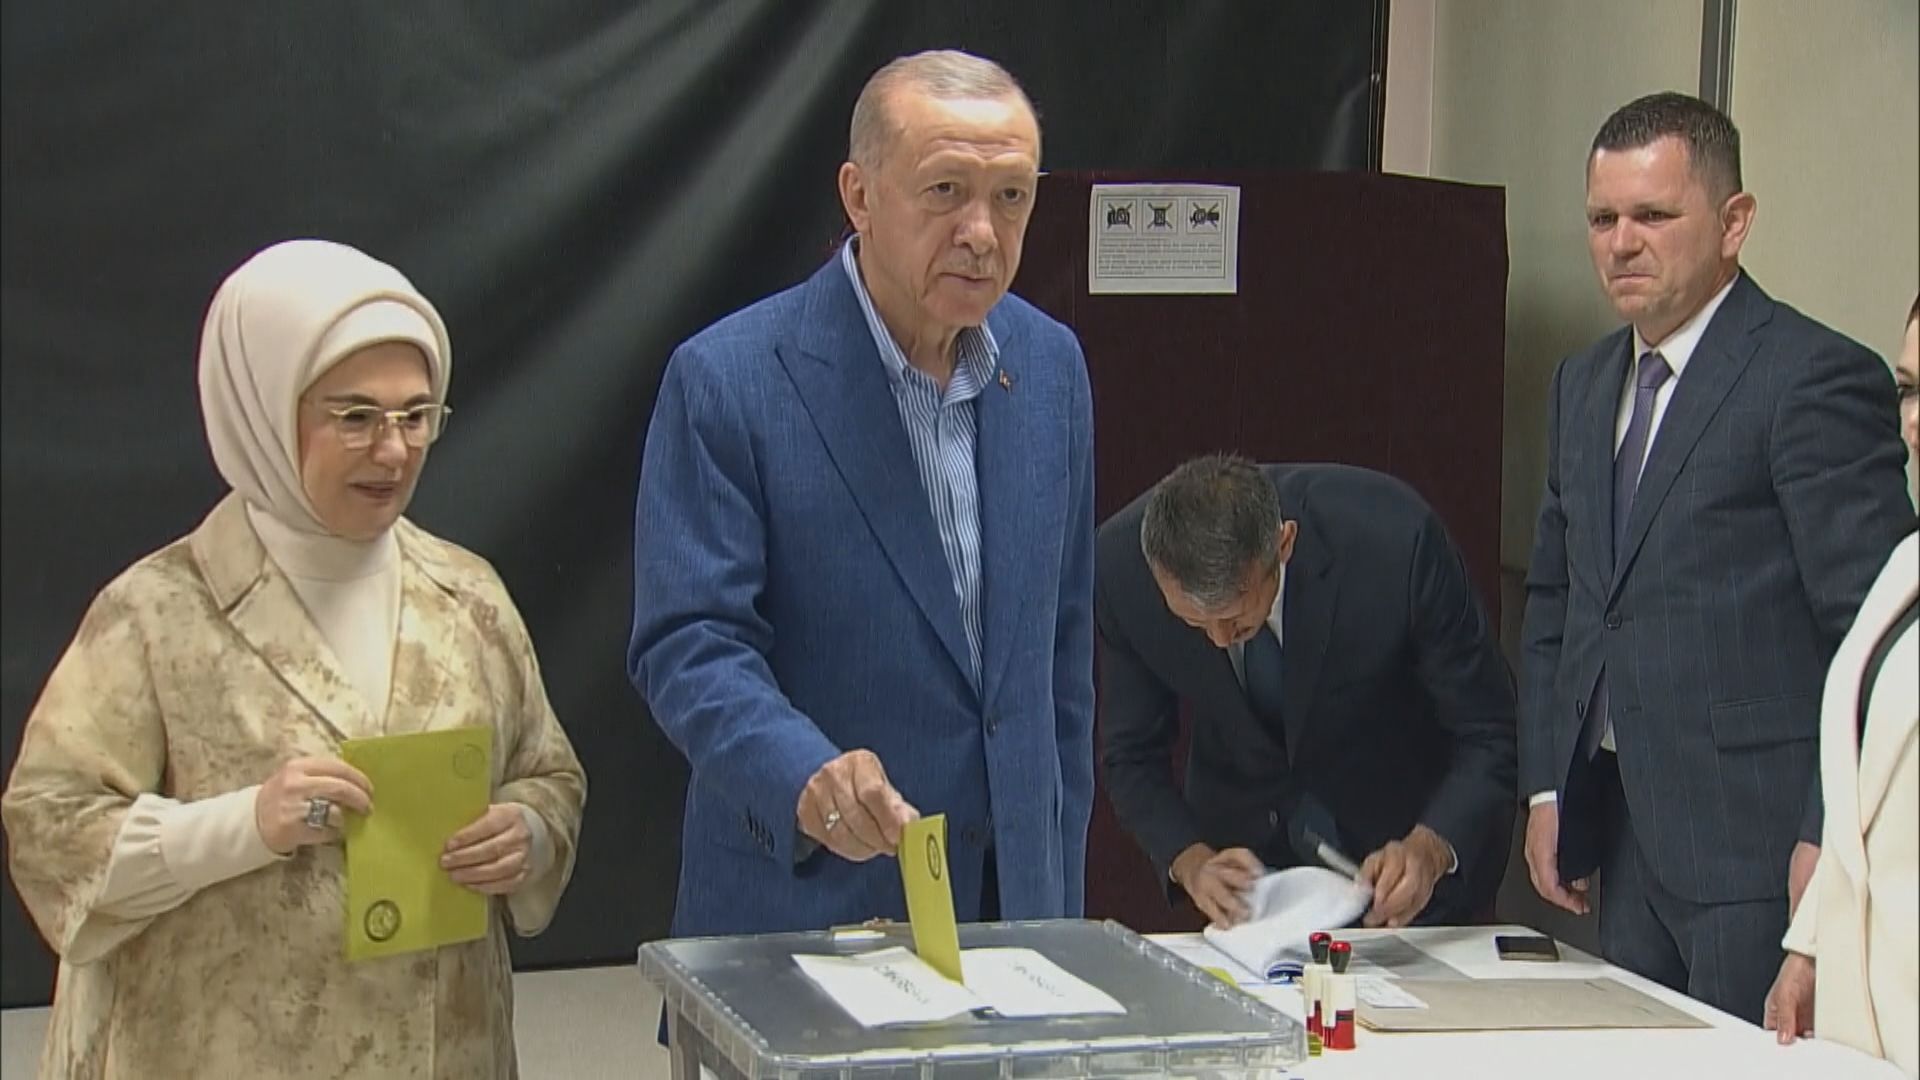 土耳其總統大選次輪投票結束 總統埃爾多安有望成功連任